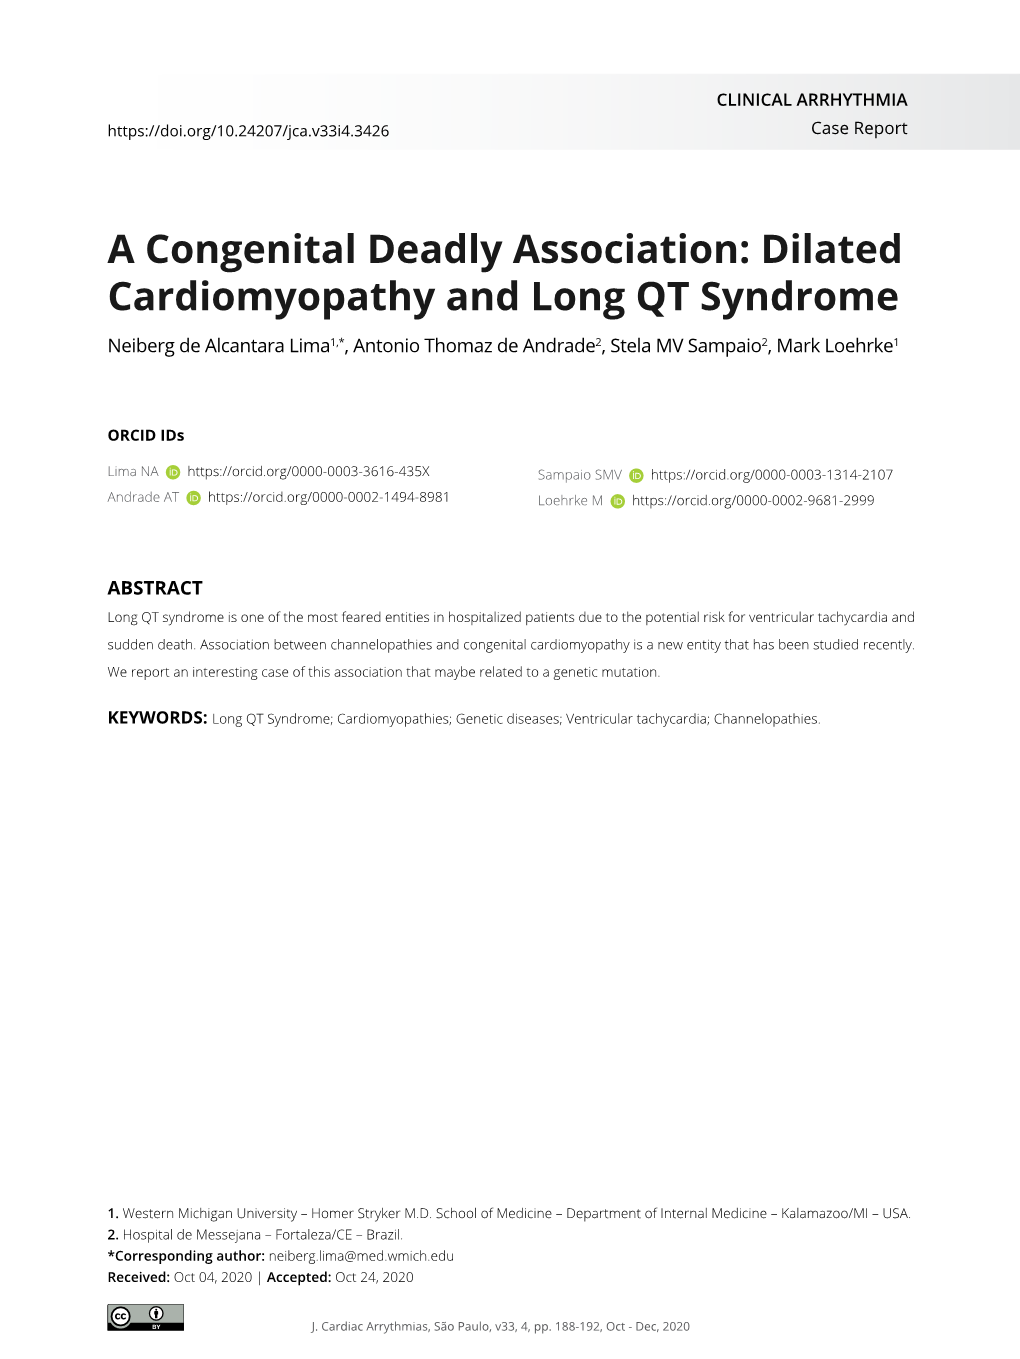 Dilated Cardiomyopathy and Long QT Syndrome Neiberg De Alcantara Lima1,*, Antonio Thomaz De Andrade2, Stela MV Sampaio2, Mark Loehrke1